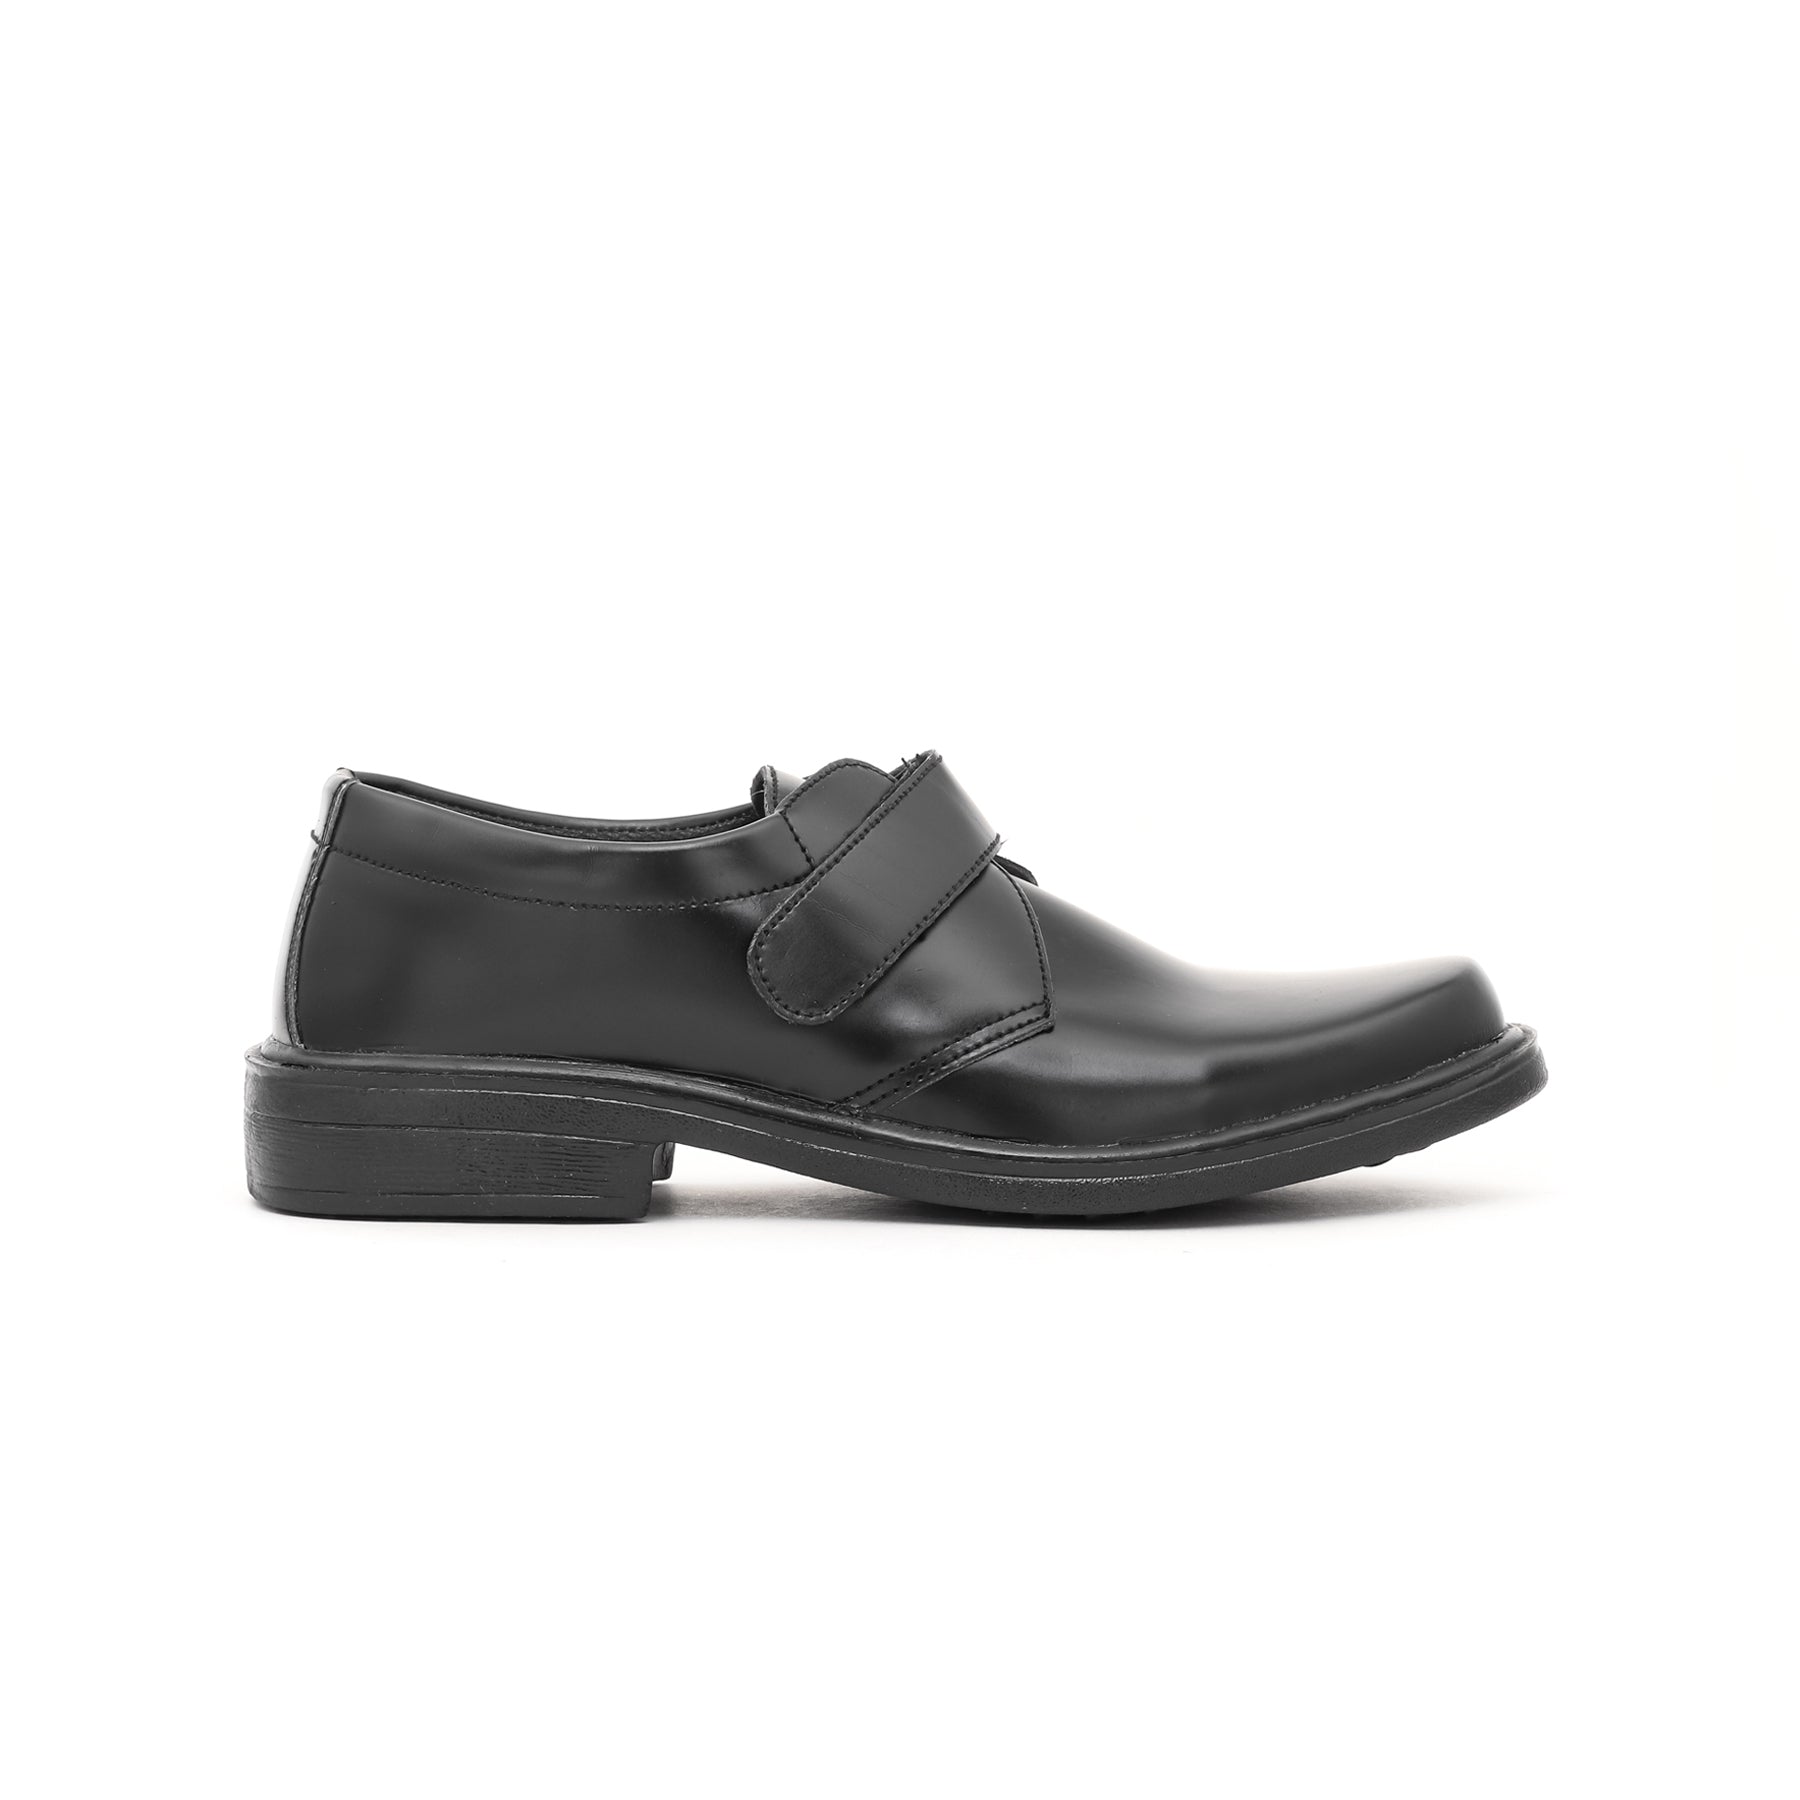 Boys Black School Shoes SK1053